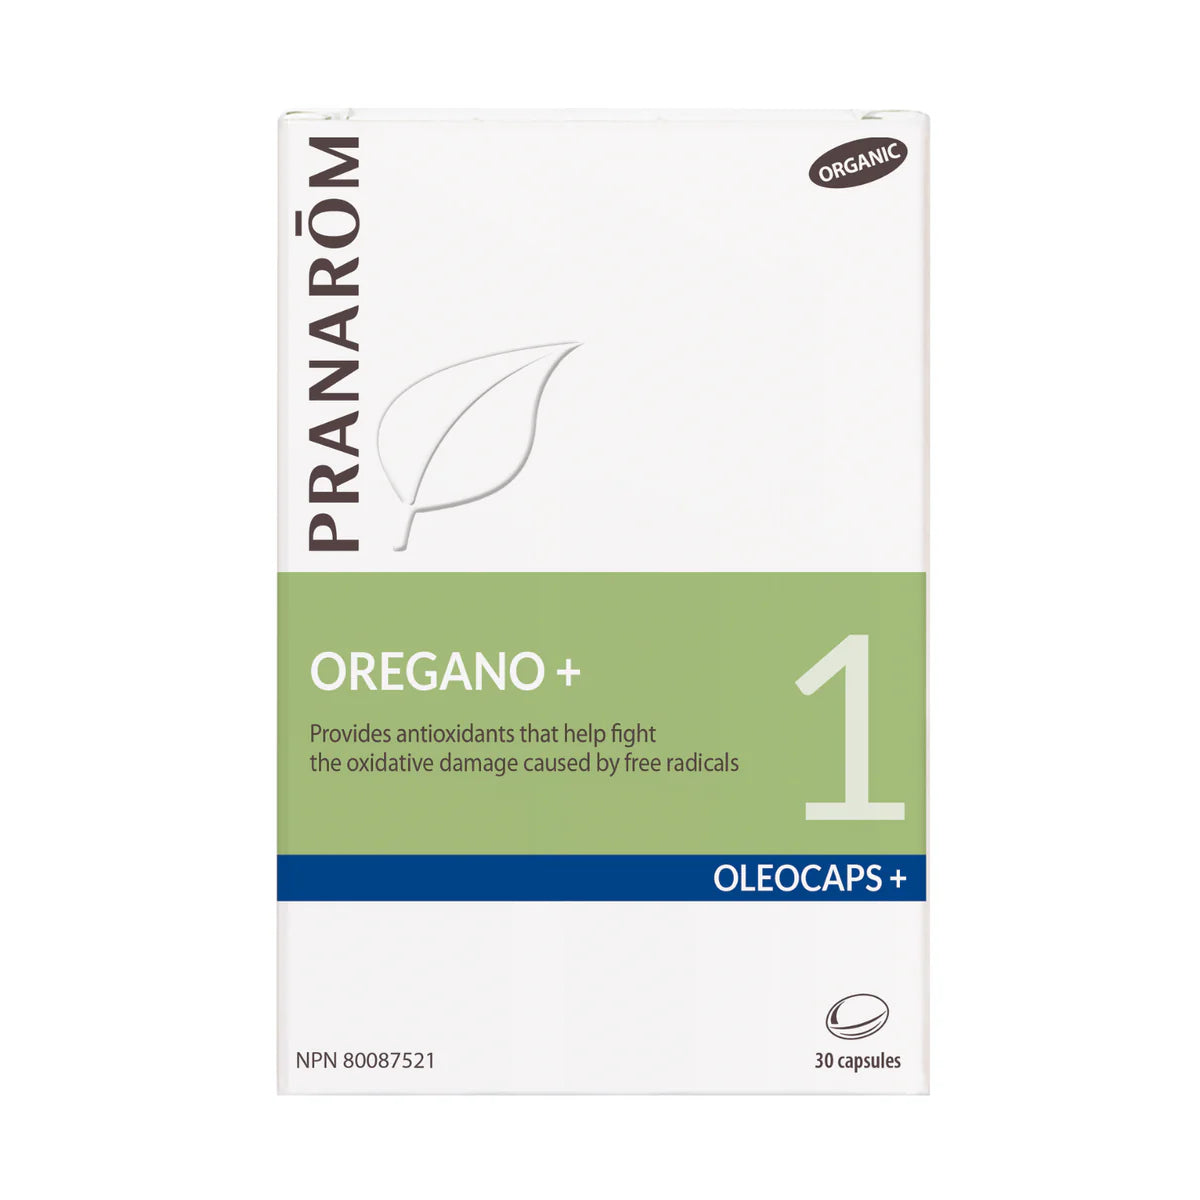 OREGANO + Pranacaps 100% pure and natural essential oils 30 caps Organic* - iwellnessbox